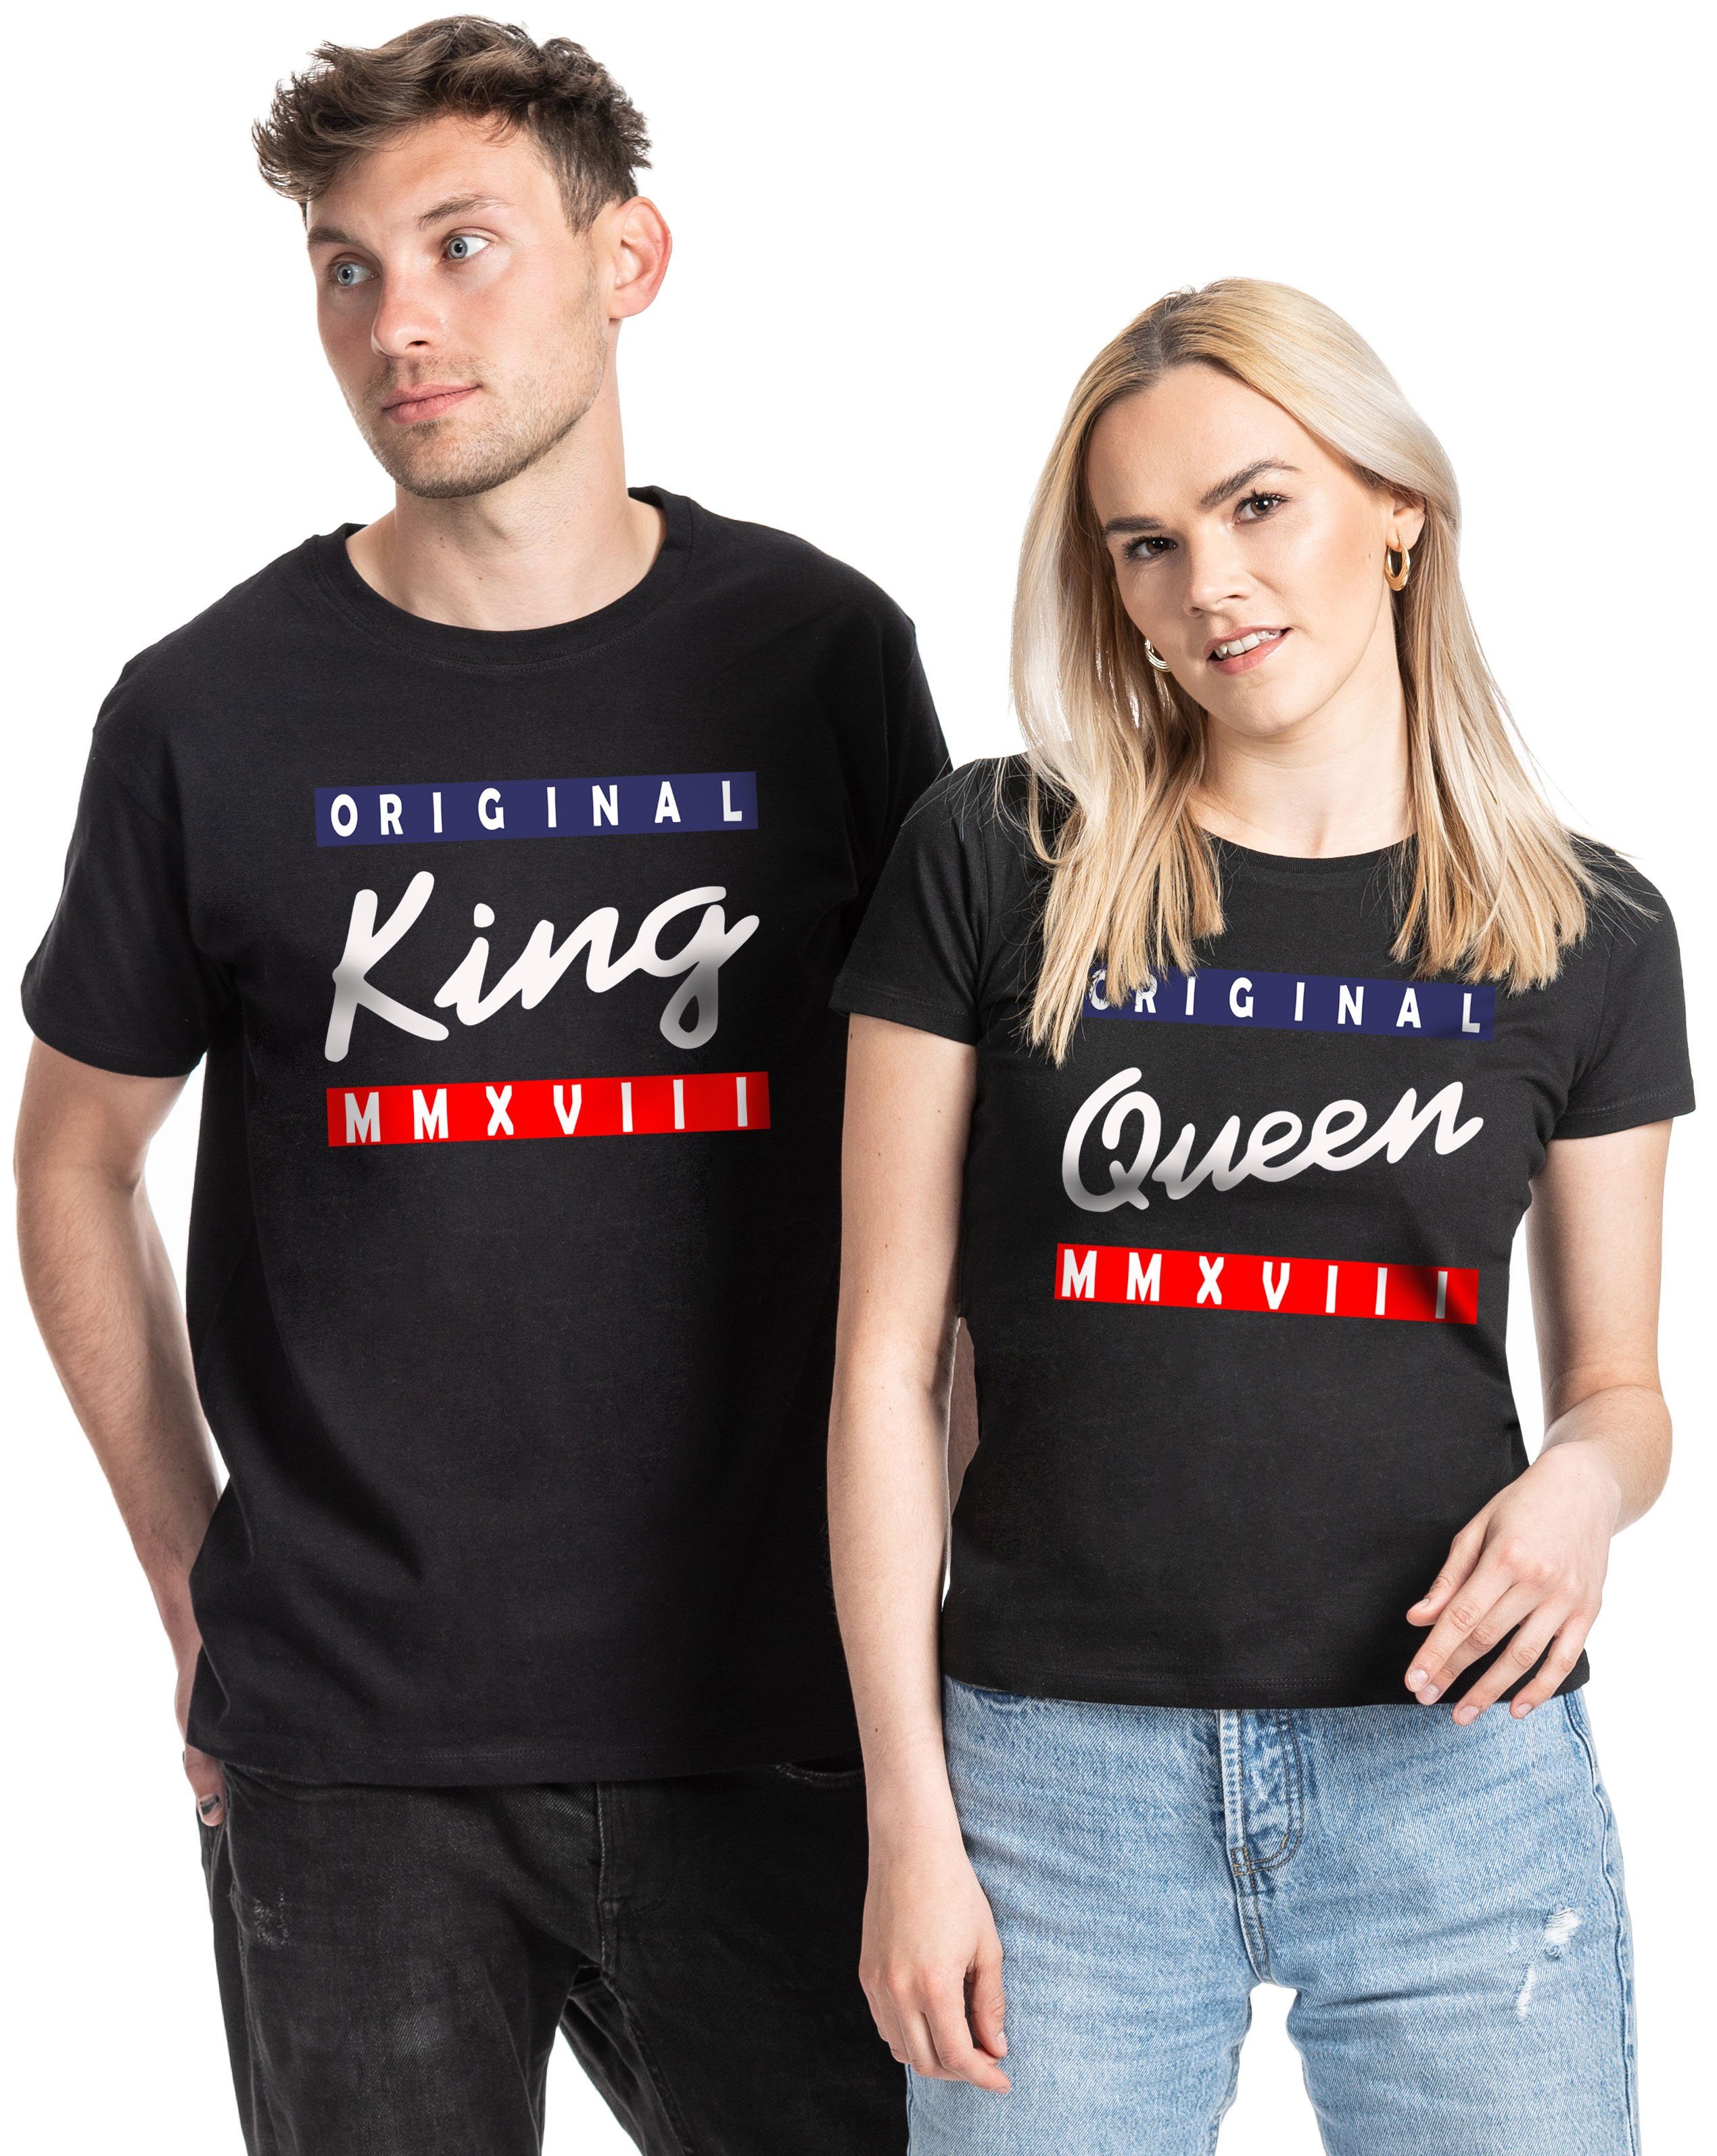 Couples Shop Print-Shirt King & Queen T-Shirt für Paare mit modischem Print, im Partner Look KING / Schwarz